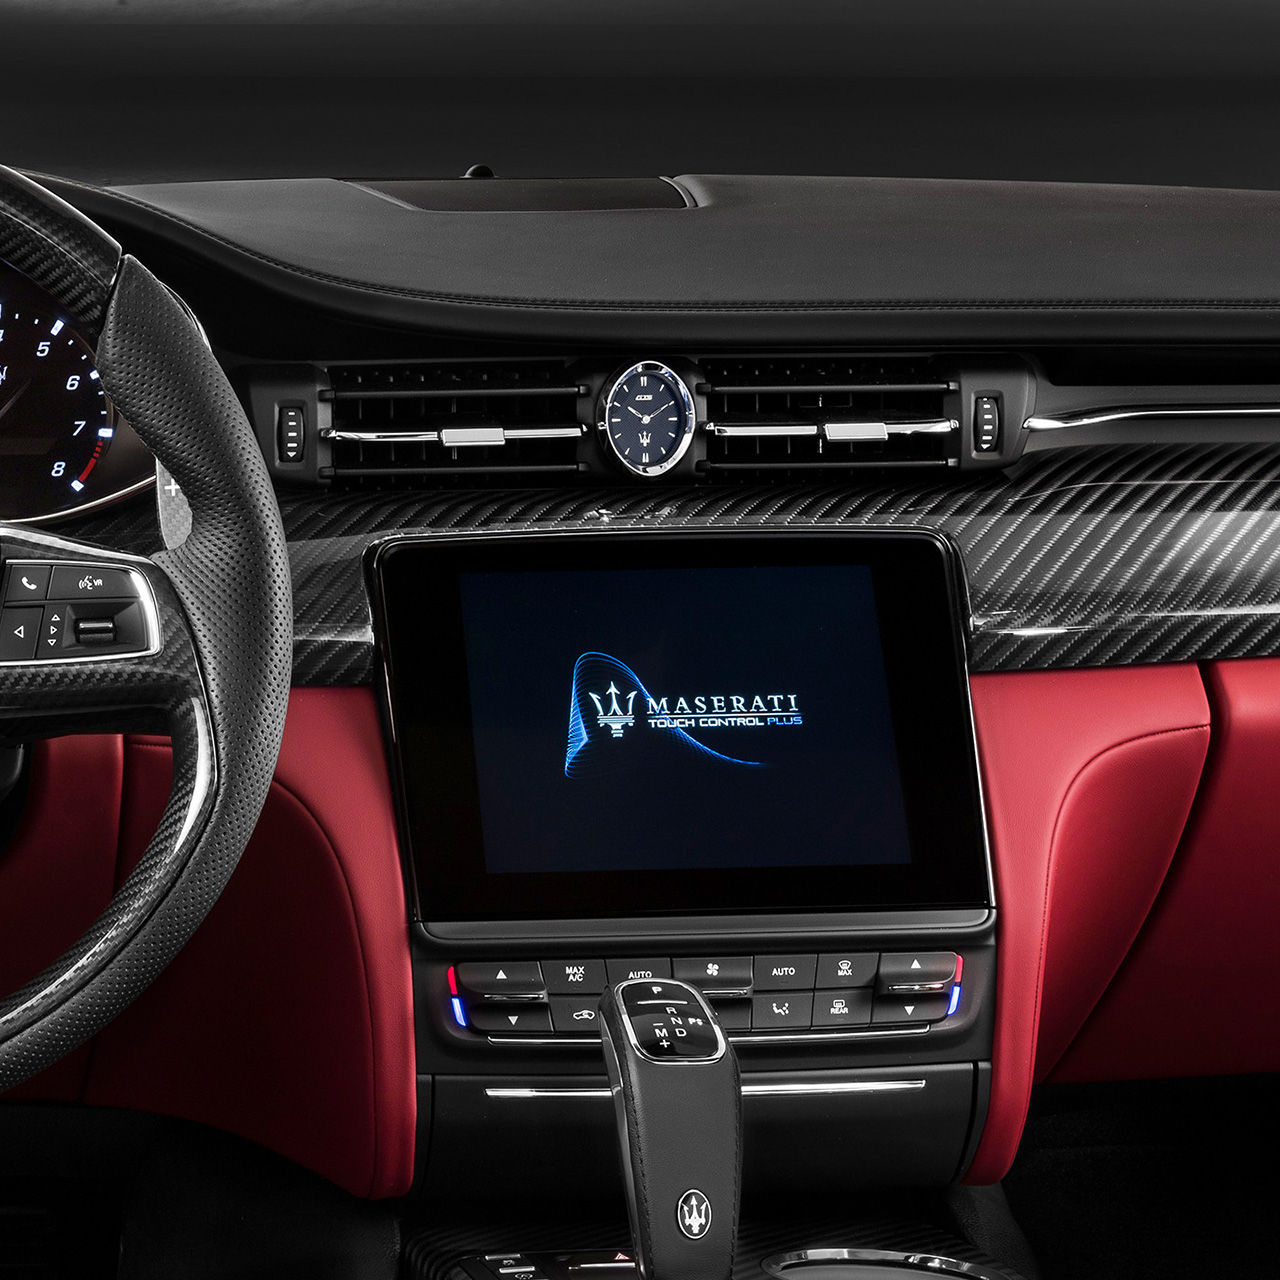 Maserati Quattroporte Innenausstattung - Display - Infotainment und App-Connectivity